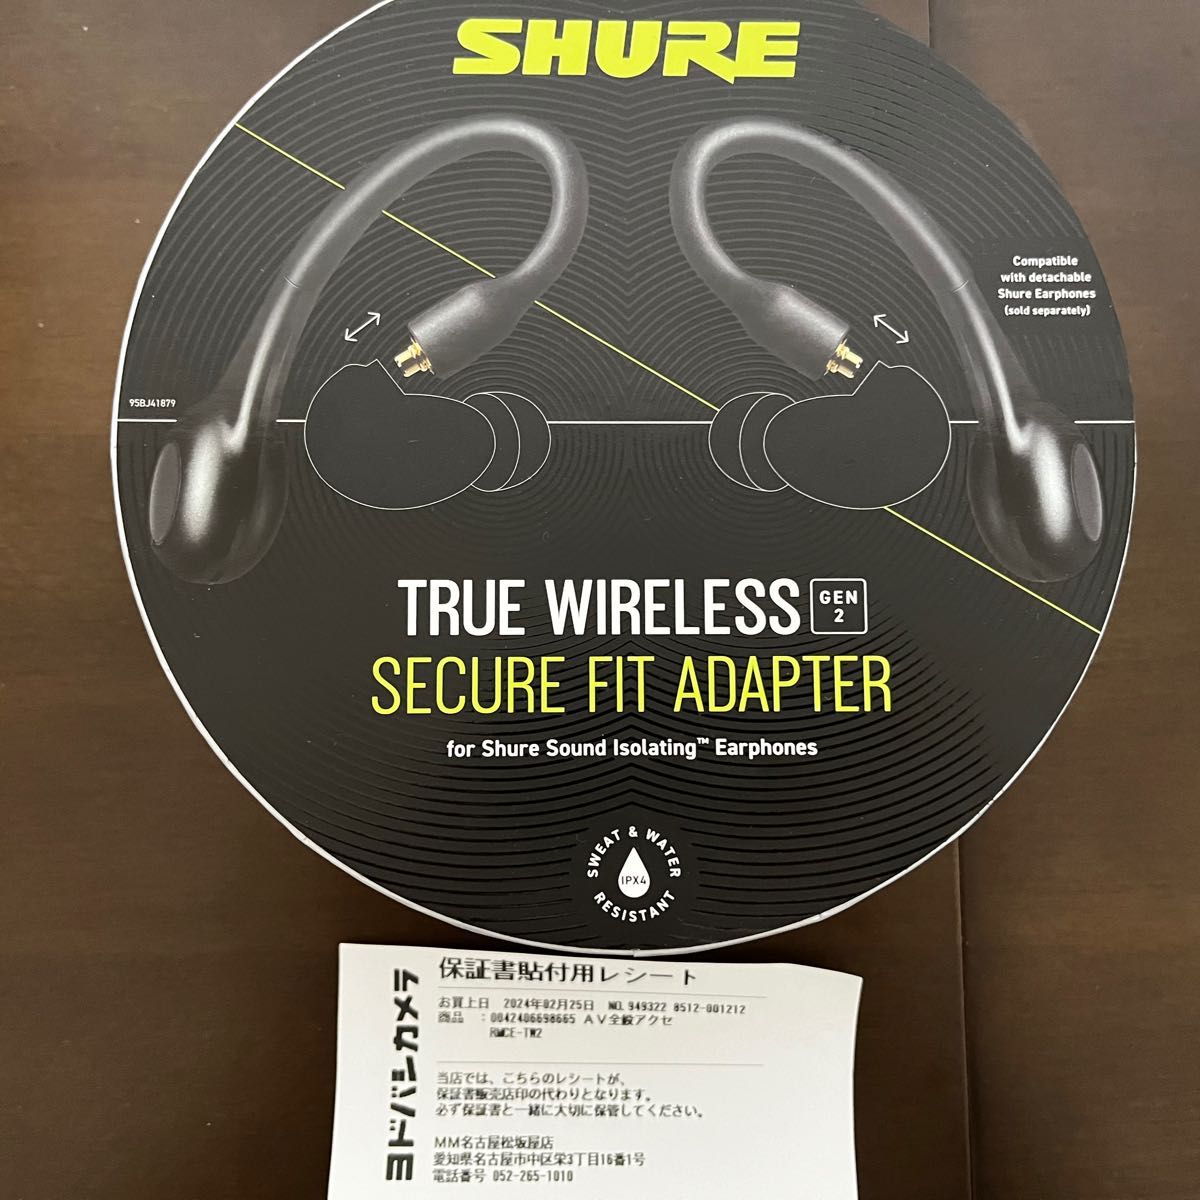 SHURE True wireless secure fit adapter gen2 rmce-tw2